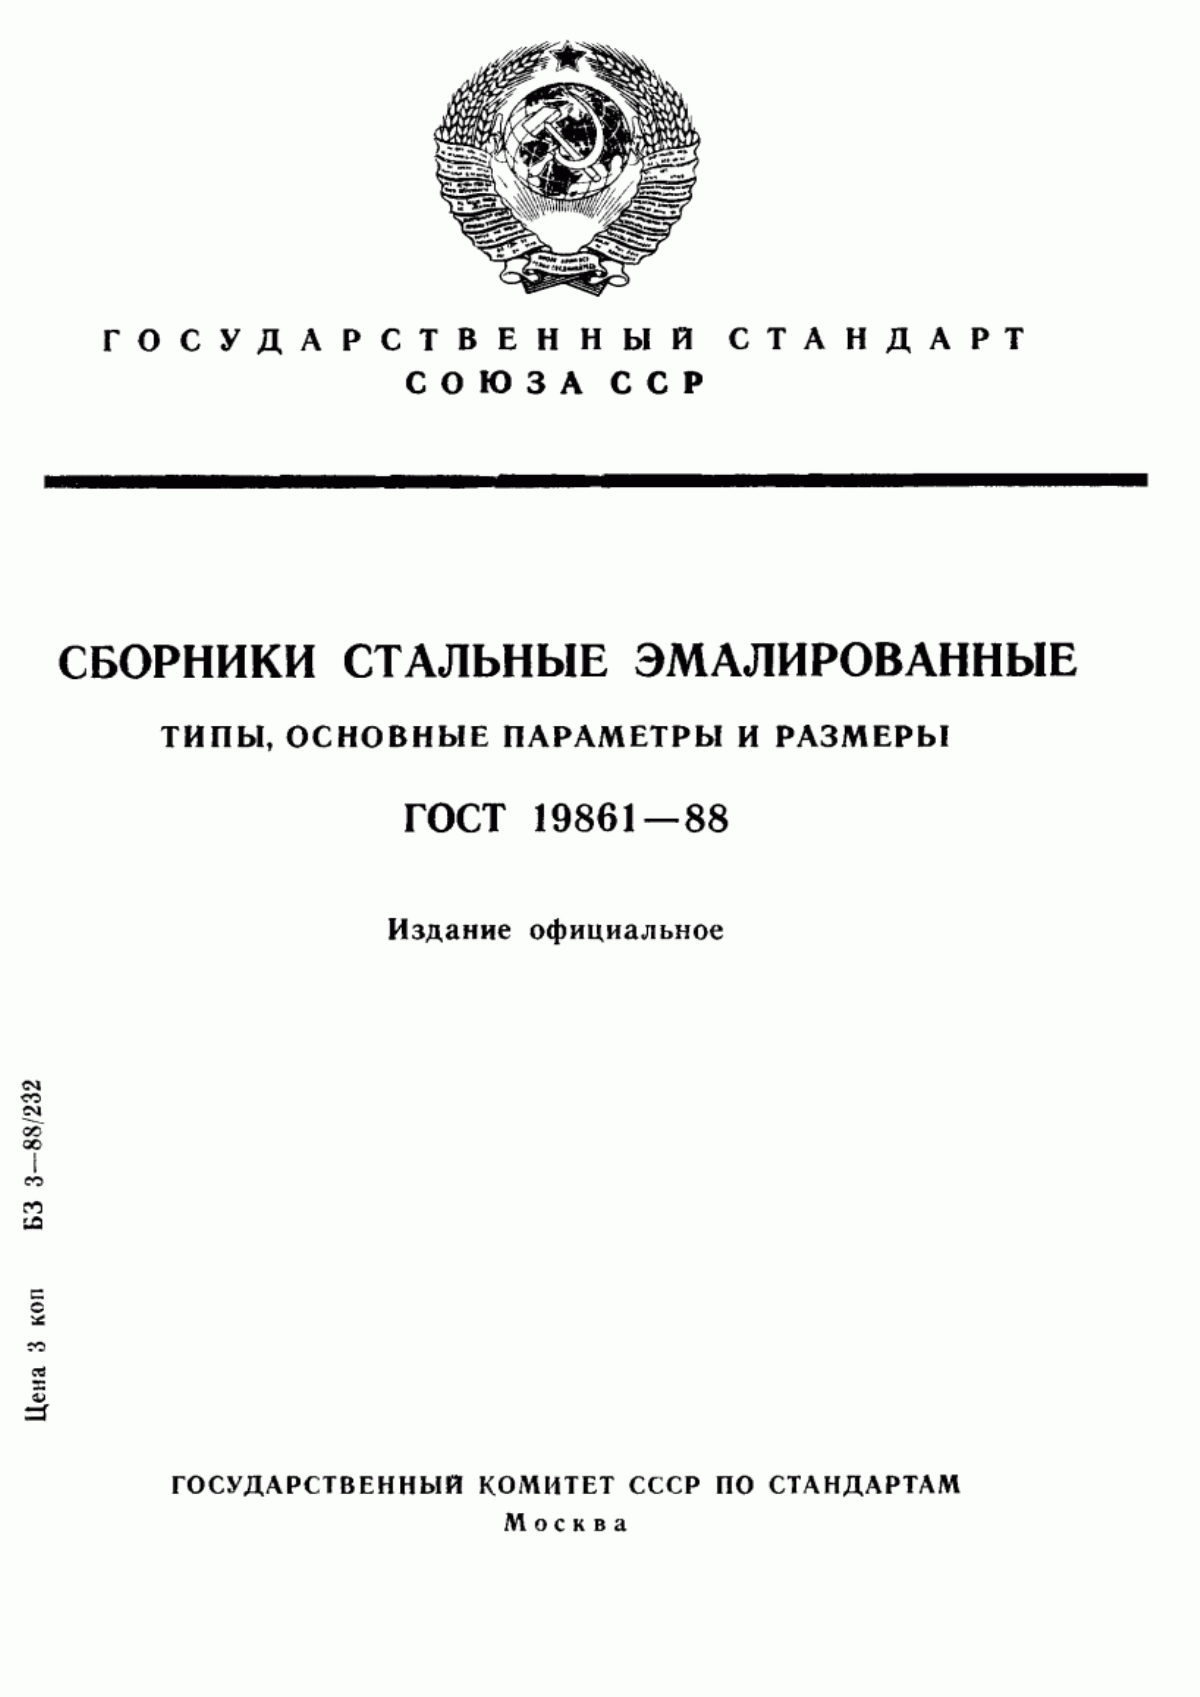 ГОСТ 19861-88 Сборники стальные эмалированные. Типы, основные параметры и размеры